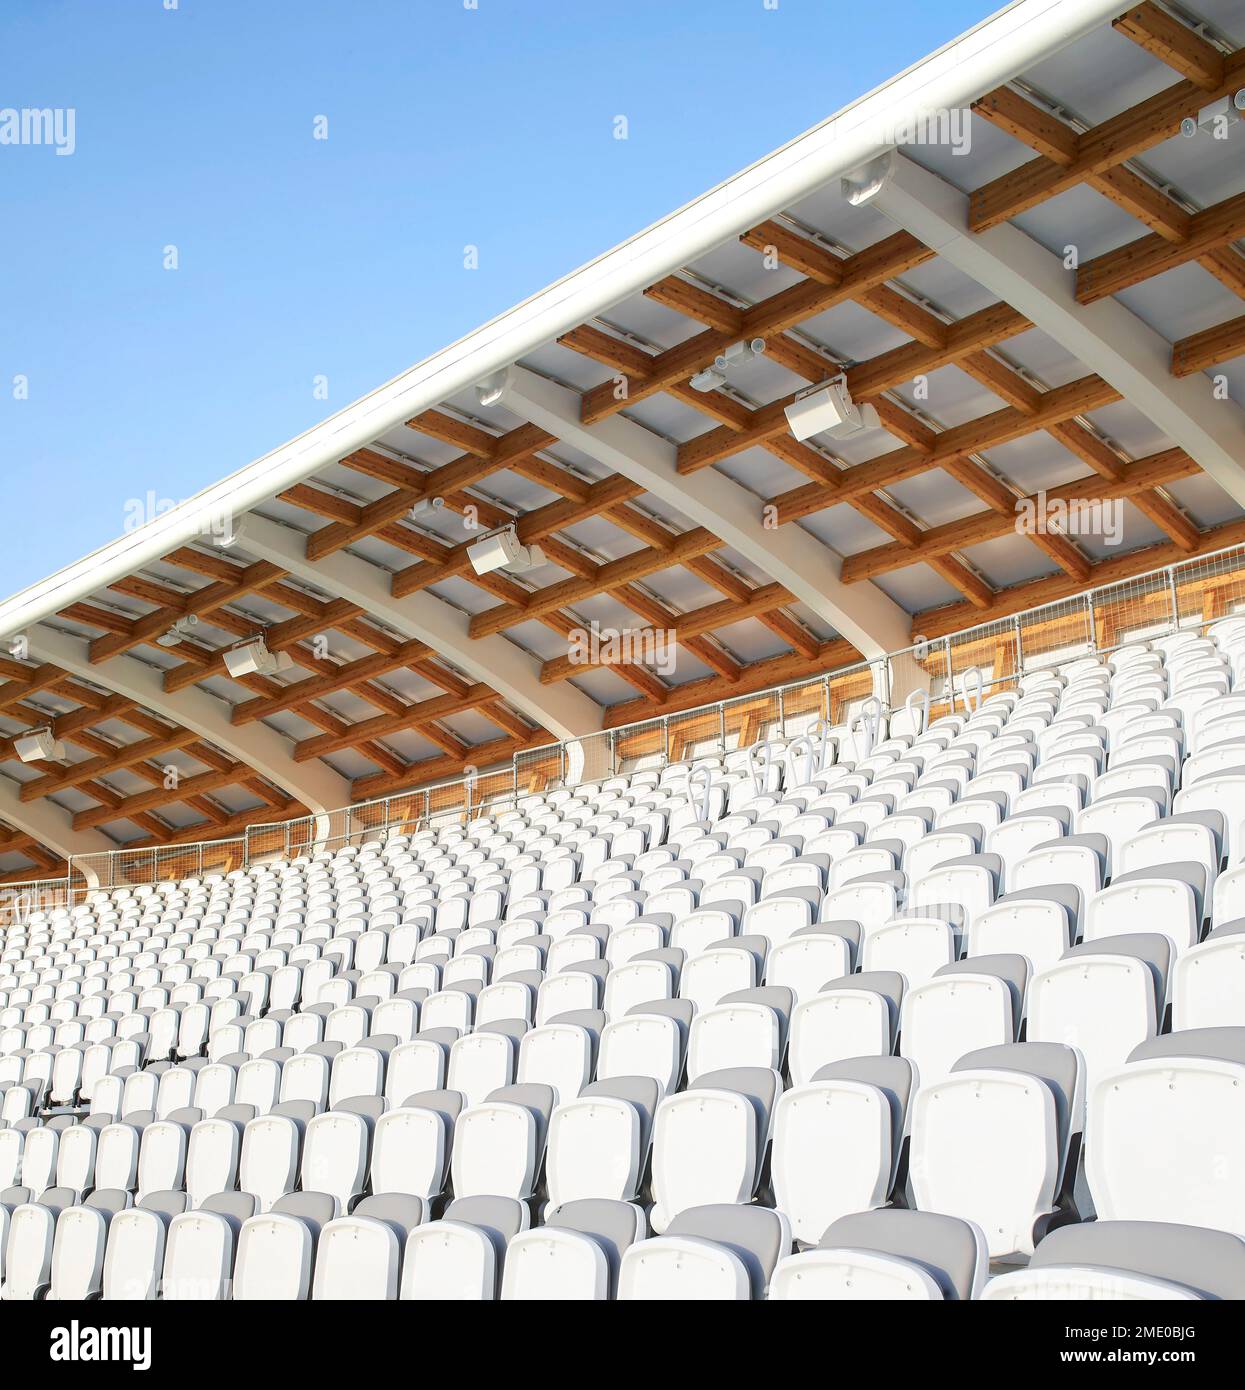 Weißes Stoffdach mit tiber-Balken und Sitzgelegenheiten. Lord's Cricket Ground, London, Großbritannien. Architekt: Wilkinson Eyre Architects, 2021. Stockfoto